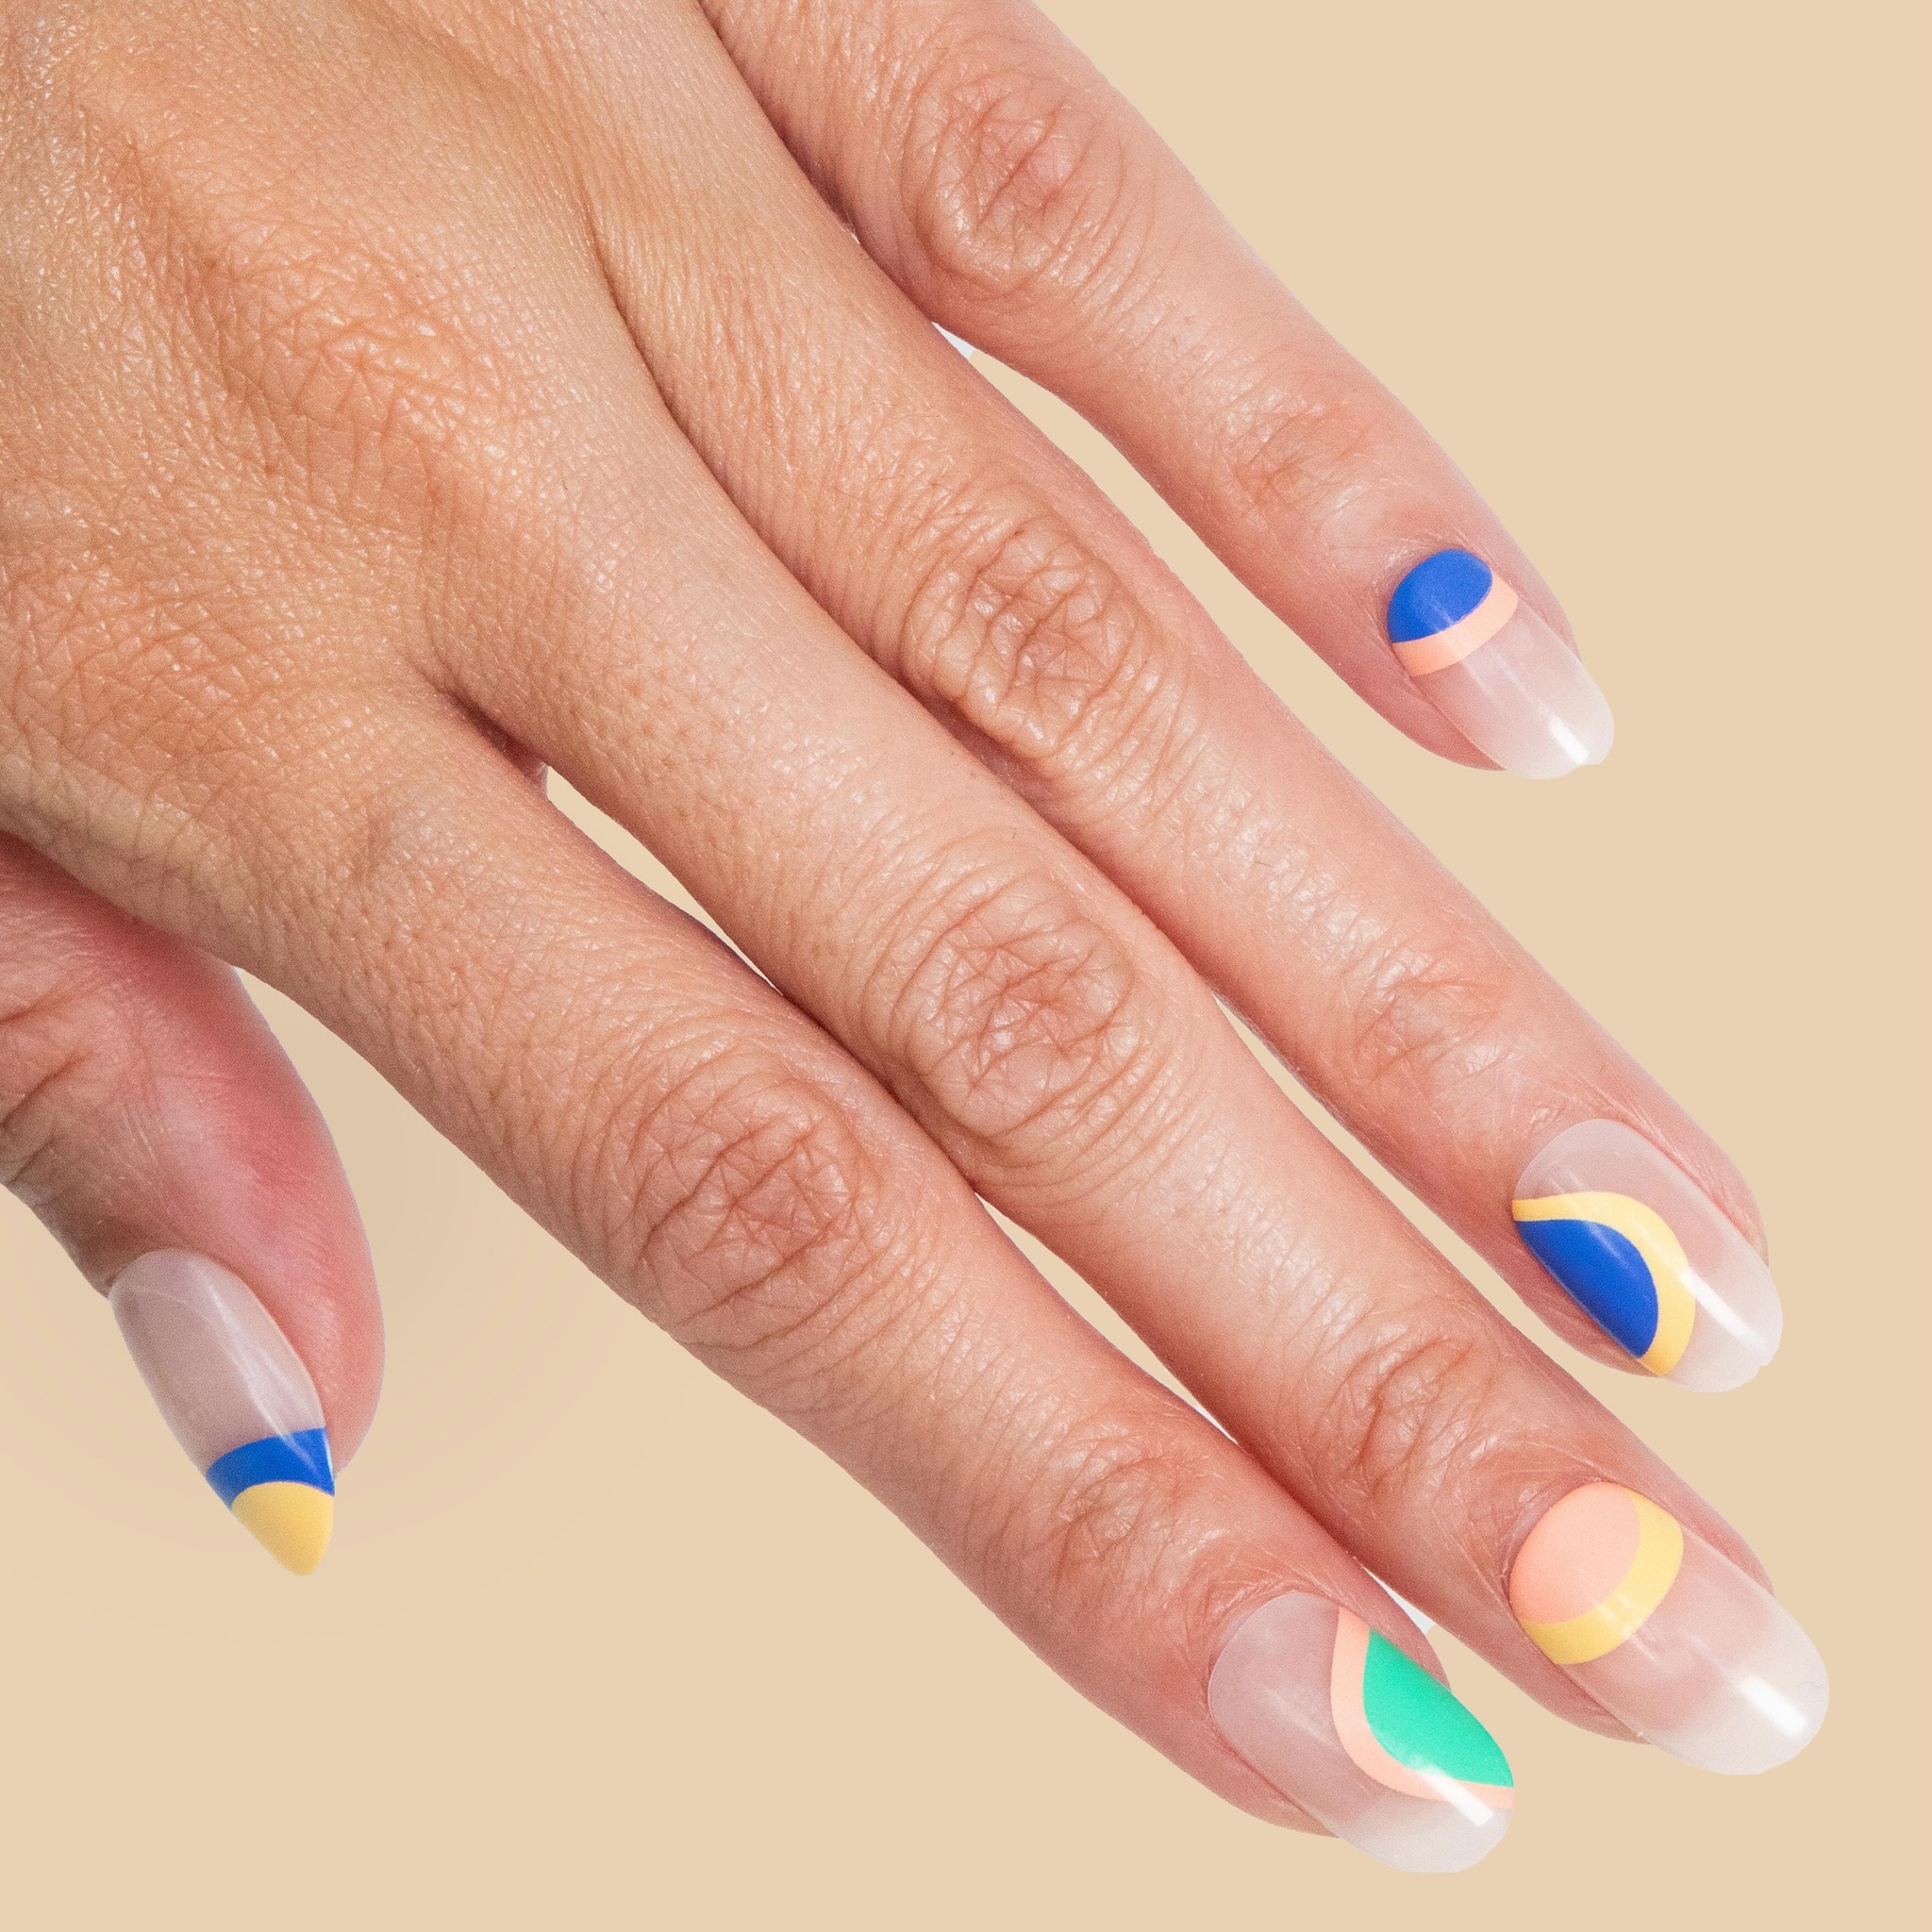 Τα nail trends της άνοιξης που ταιριάζουν σε όλα τα νύχια και σε κάθε τόνο επιδερμίδας